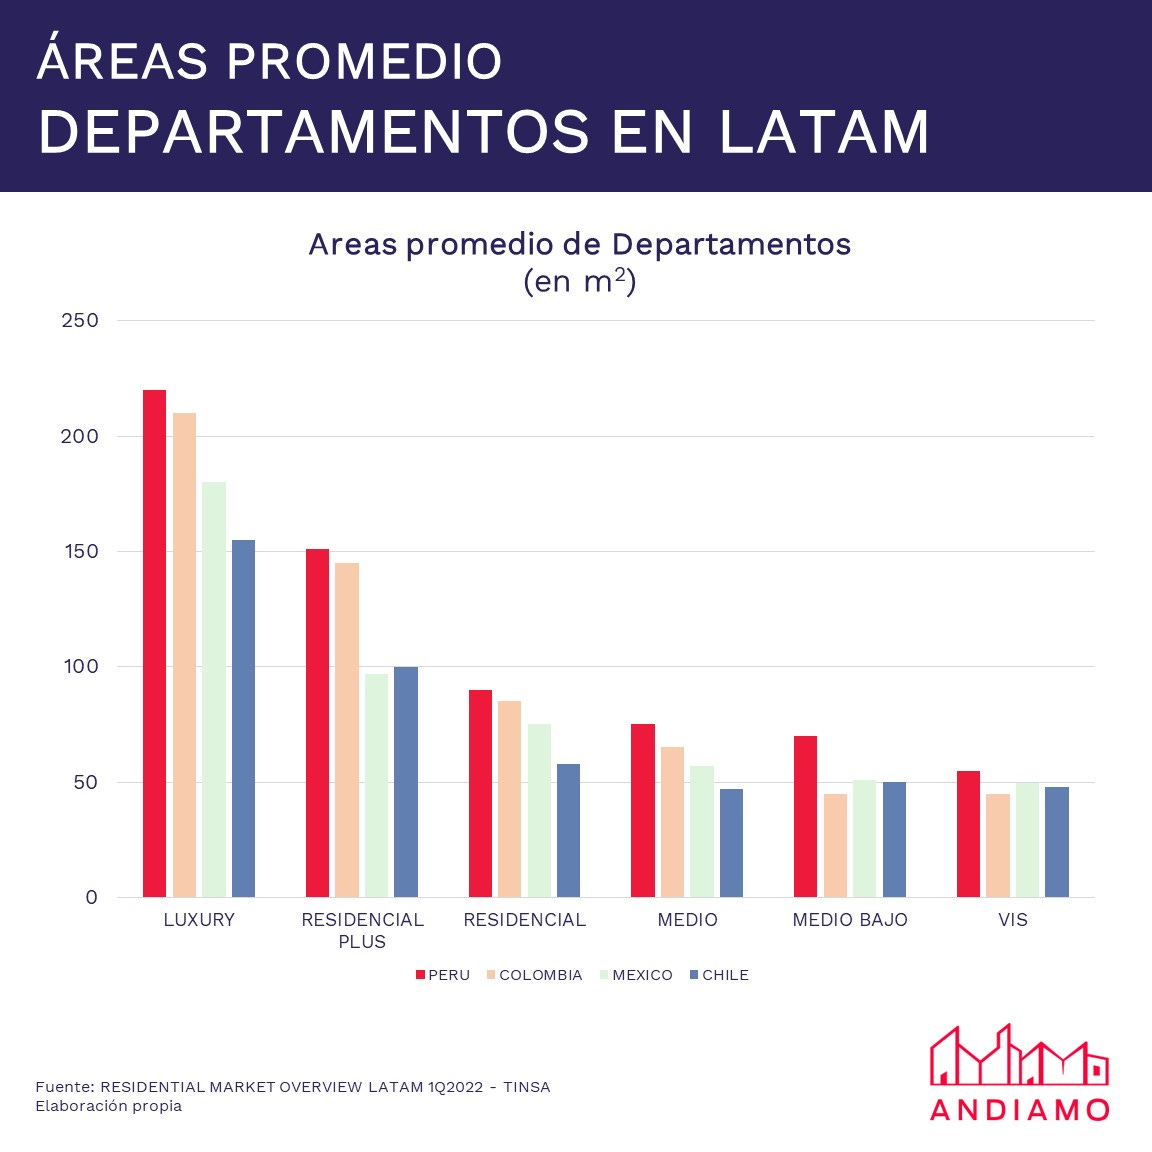 Areas promedio de departamentos en Latam